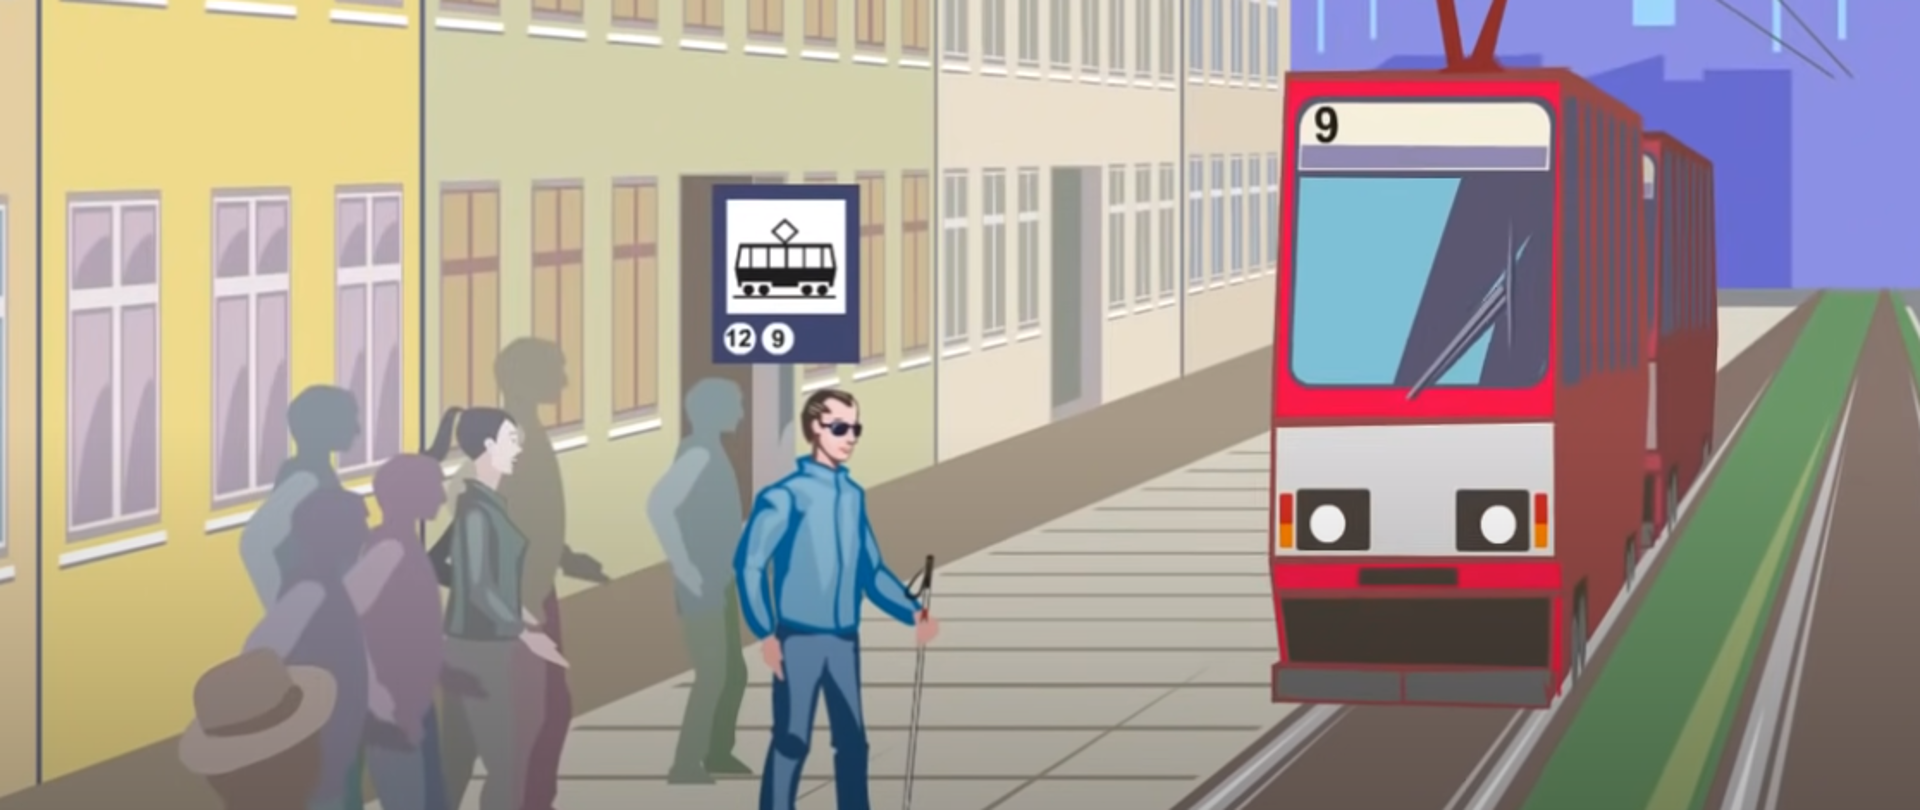 rysunek - mężczyzna w ciemnych okularach, niewidomy czeka na tramwaj na przystanku 